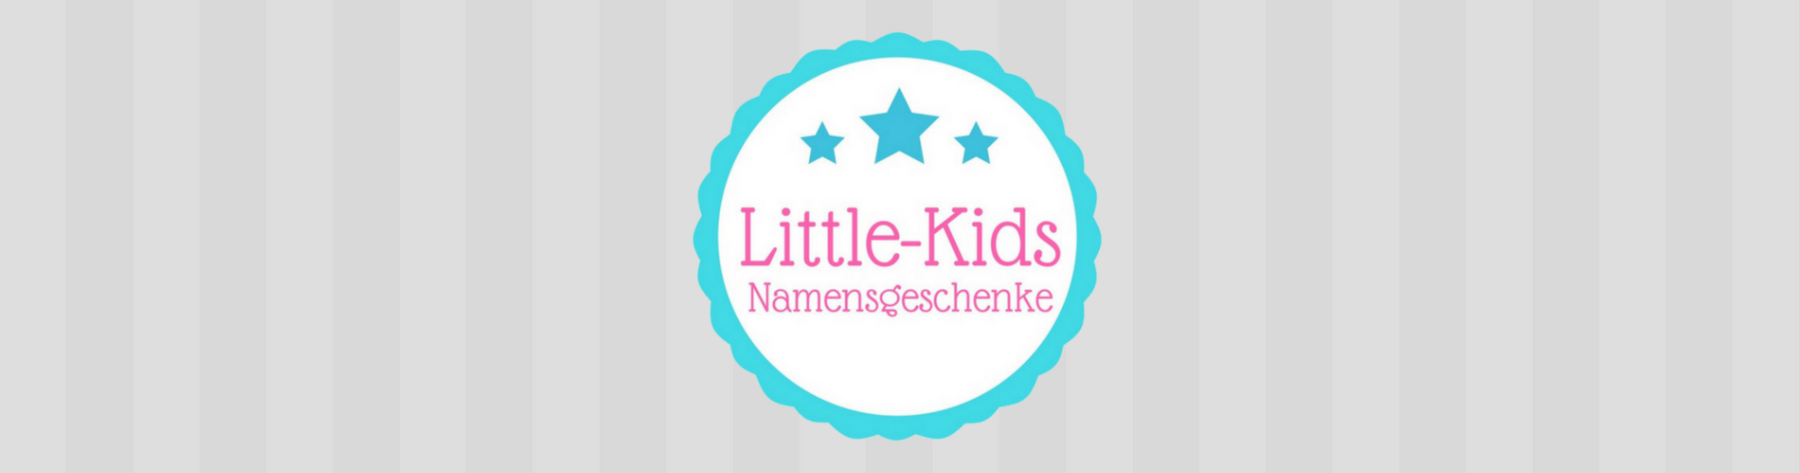 LittleKids_Hintergrundbild_Shop